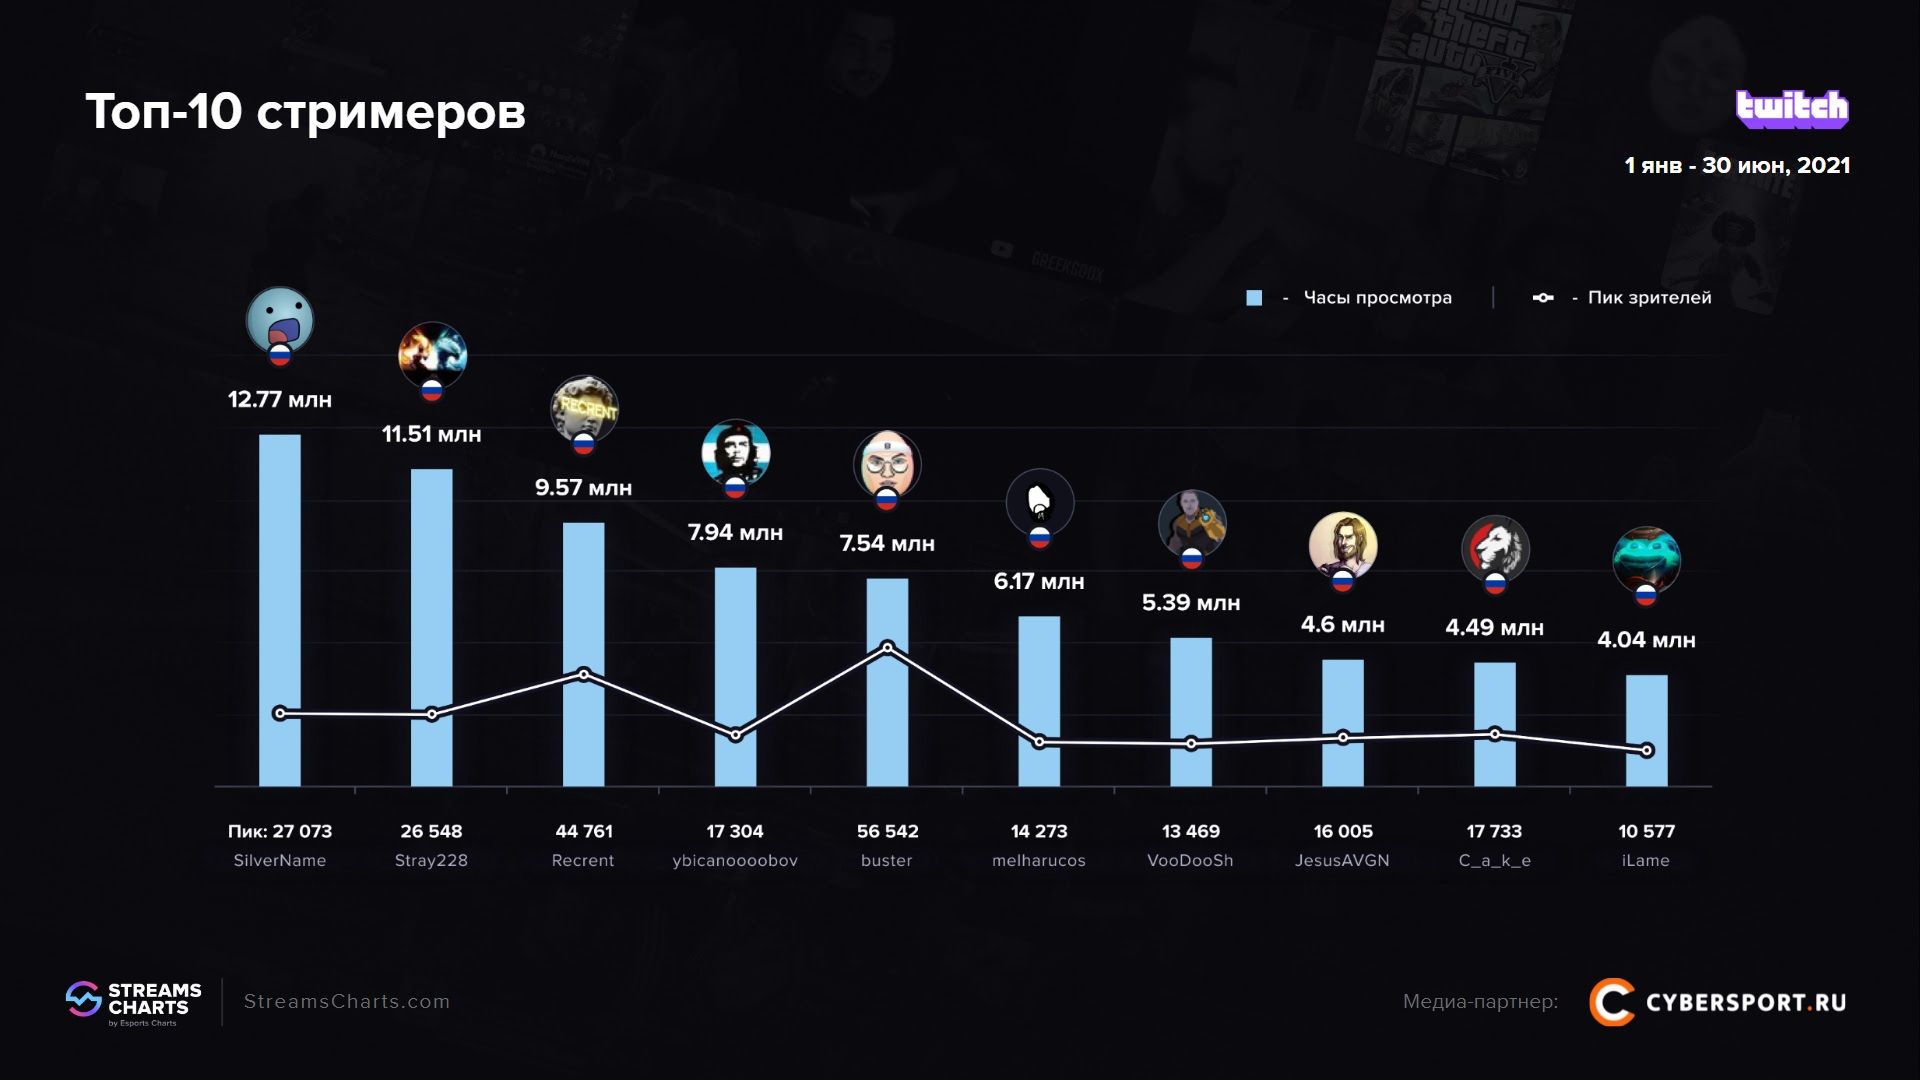 Самые популярные русскоязычные стримеры на Twitch | Источник: исследование Streams Charts и Cybersport.ru